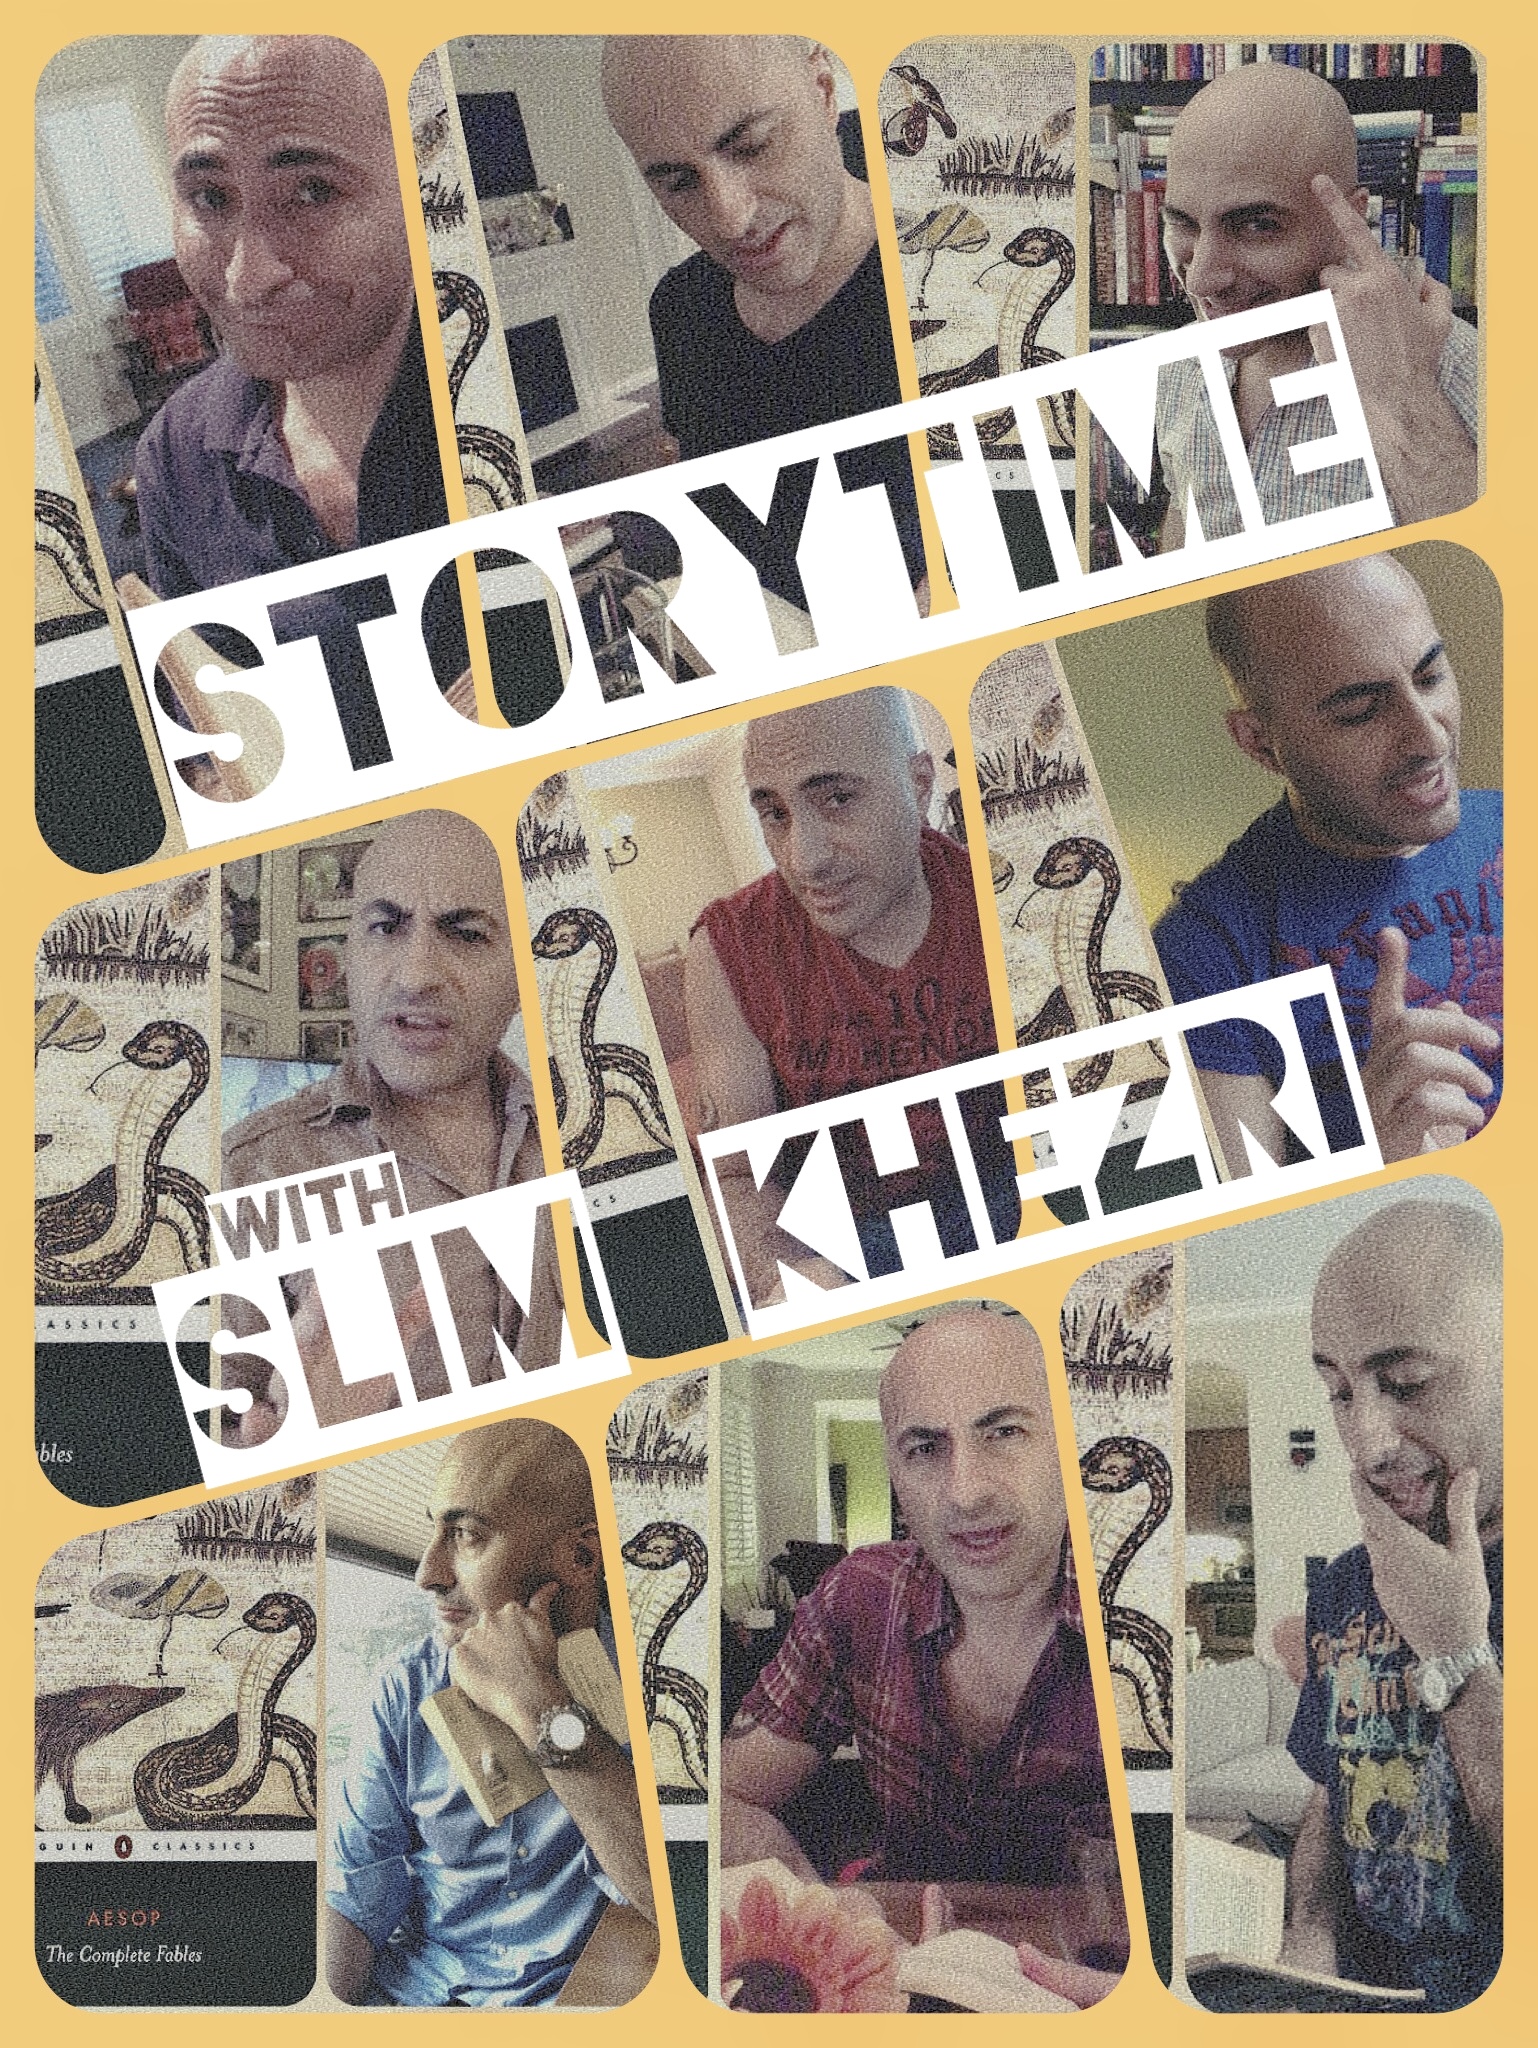 Storytime with Slim Khezri